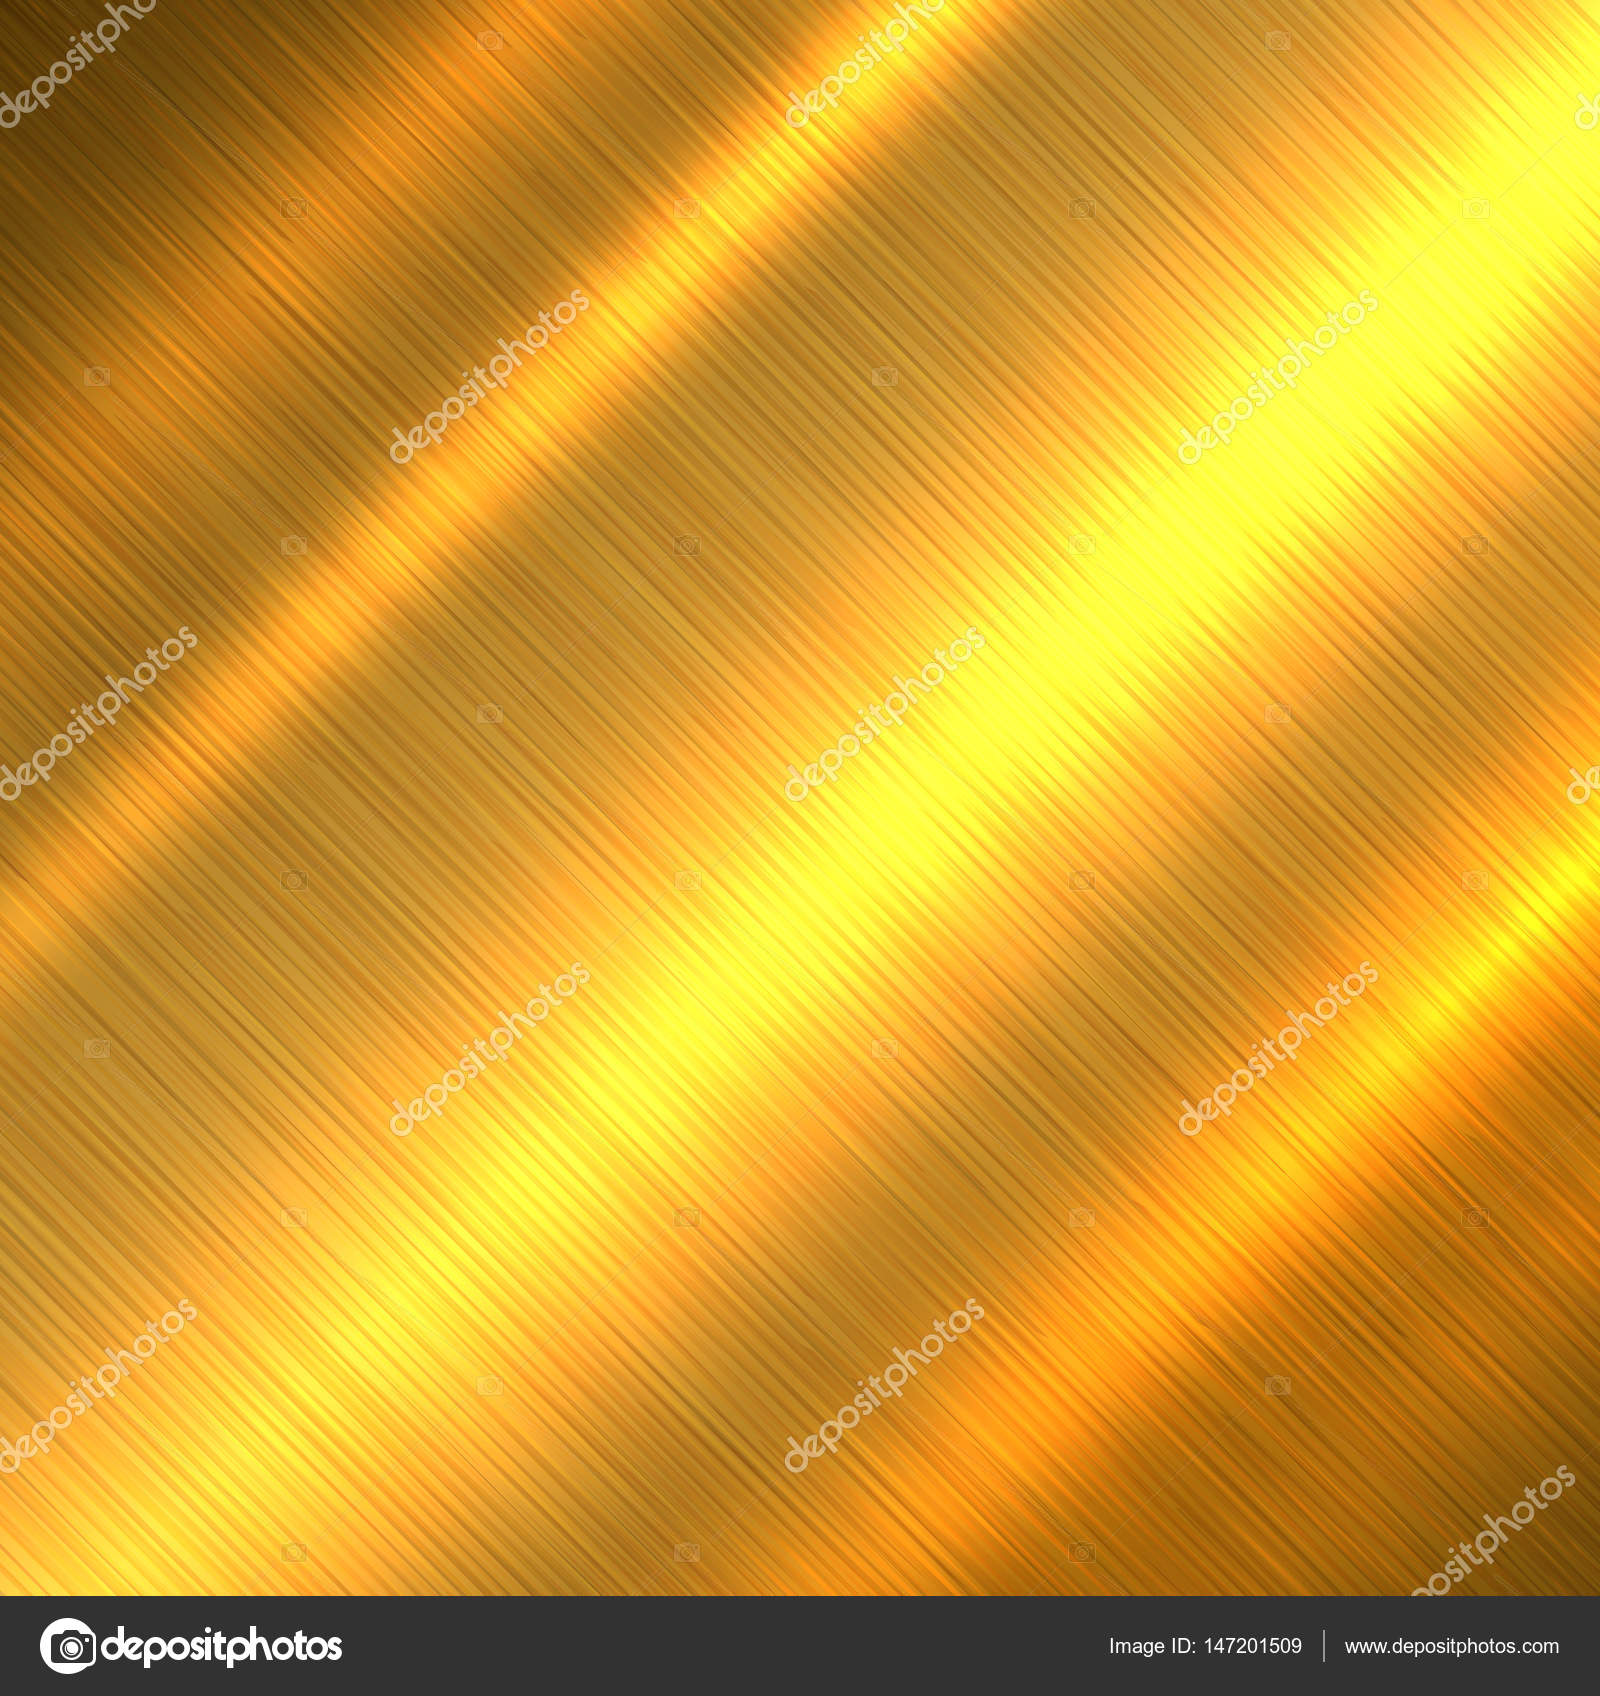 Chiếc hình nền họa tiết vàng là một trong những xu hướng phổ biến nhất hiện nay và nó đang làm mưa làm gió trong ngành thiết kế. Các sợi từng đan xen, kết hợp với ánh sáng của kim loại có tạo hình độc đáo sẽ khiến bạn không thể rời mắt khỏi bức ảnh này.